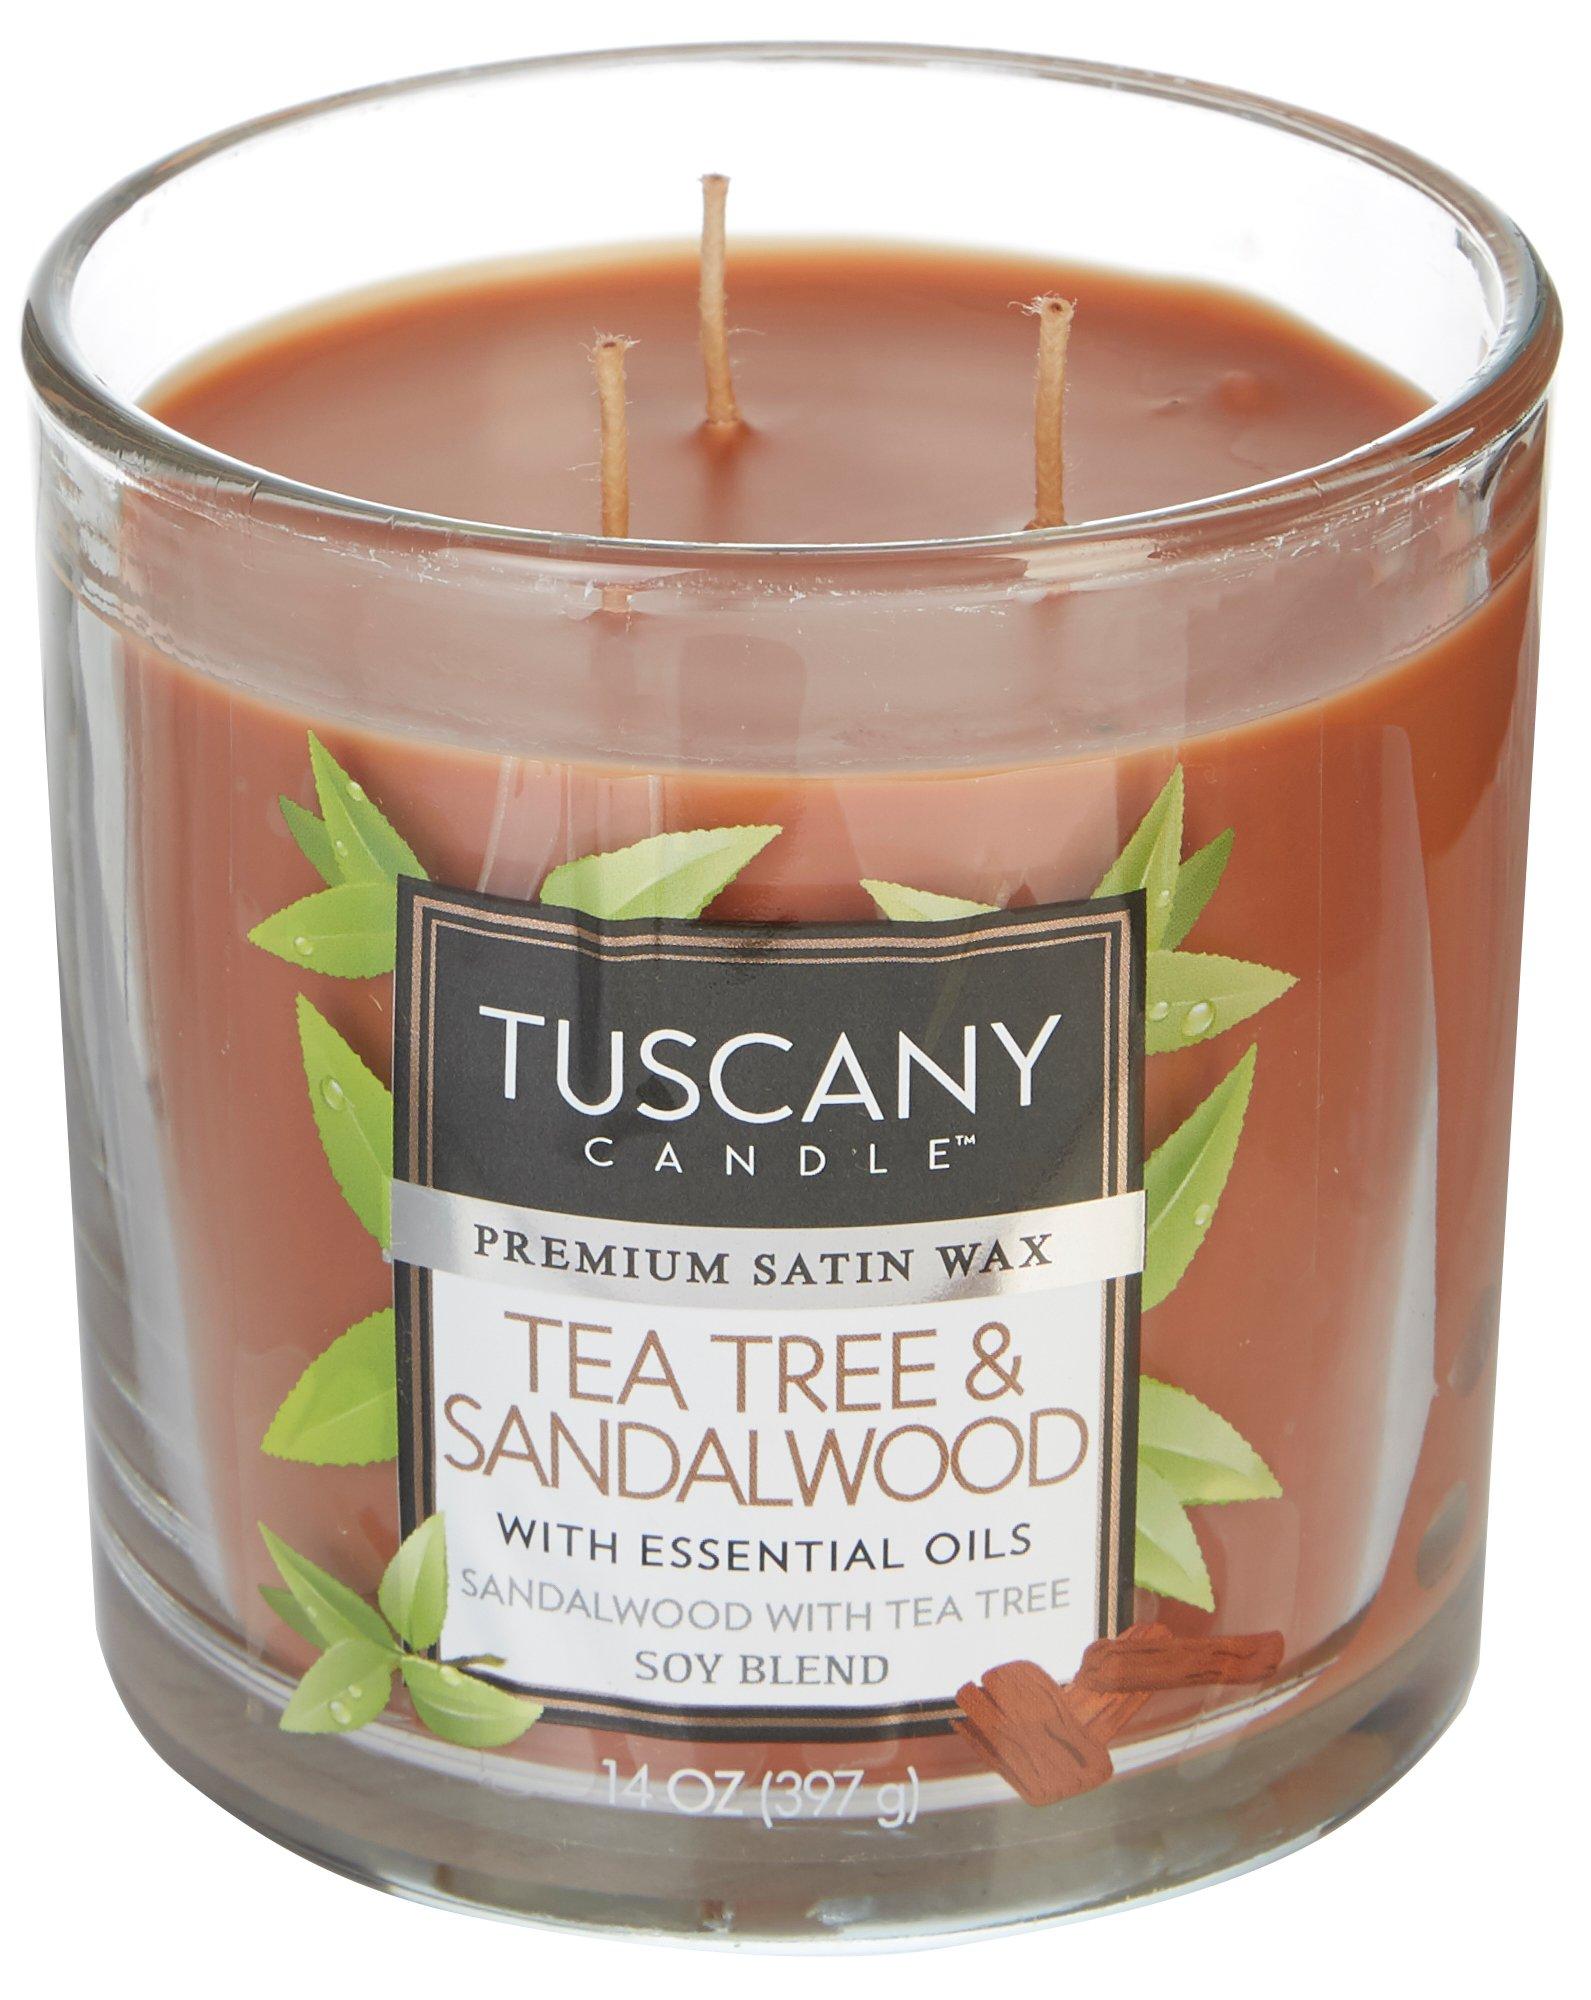 Tuscany 14 oz. Tea Tree & Sandalwood Soy